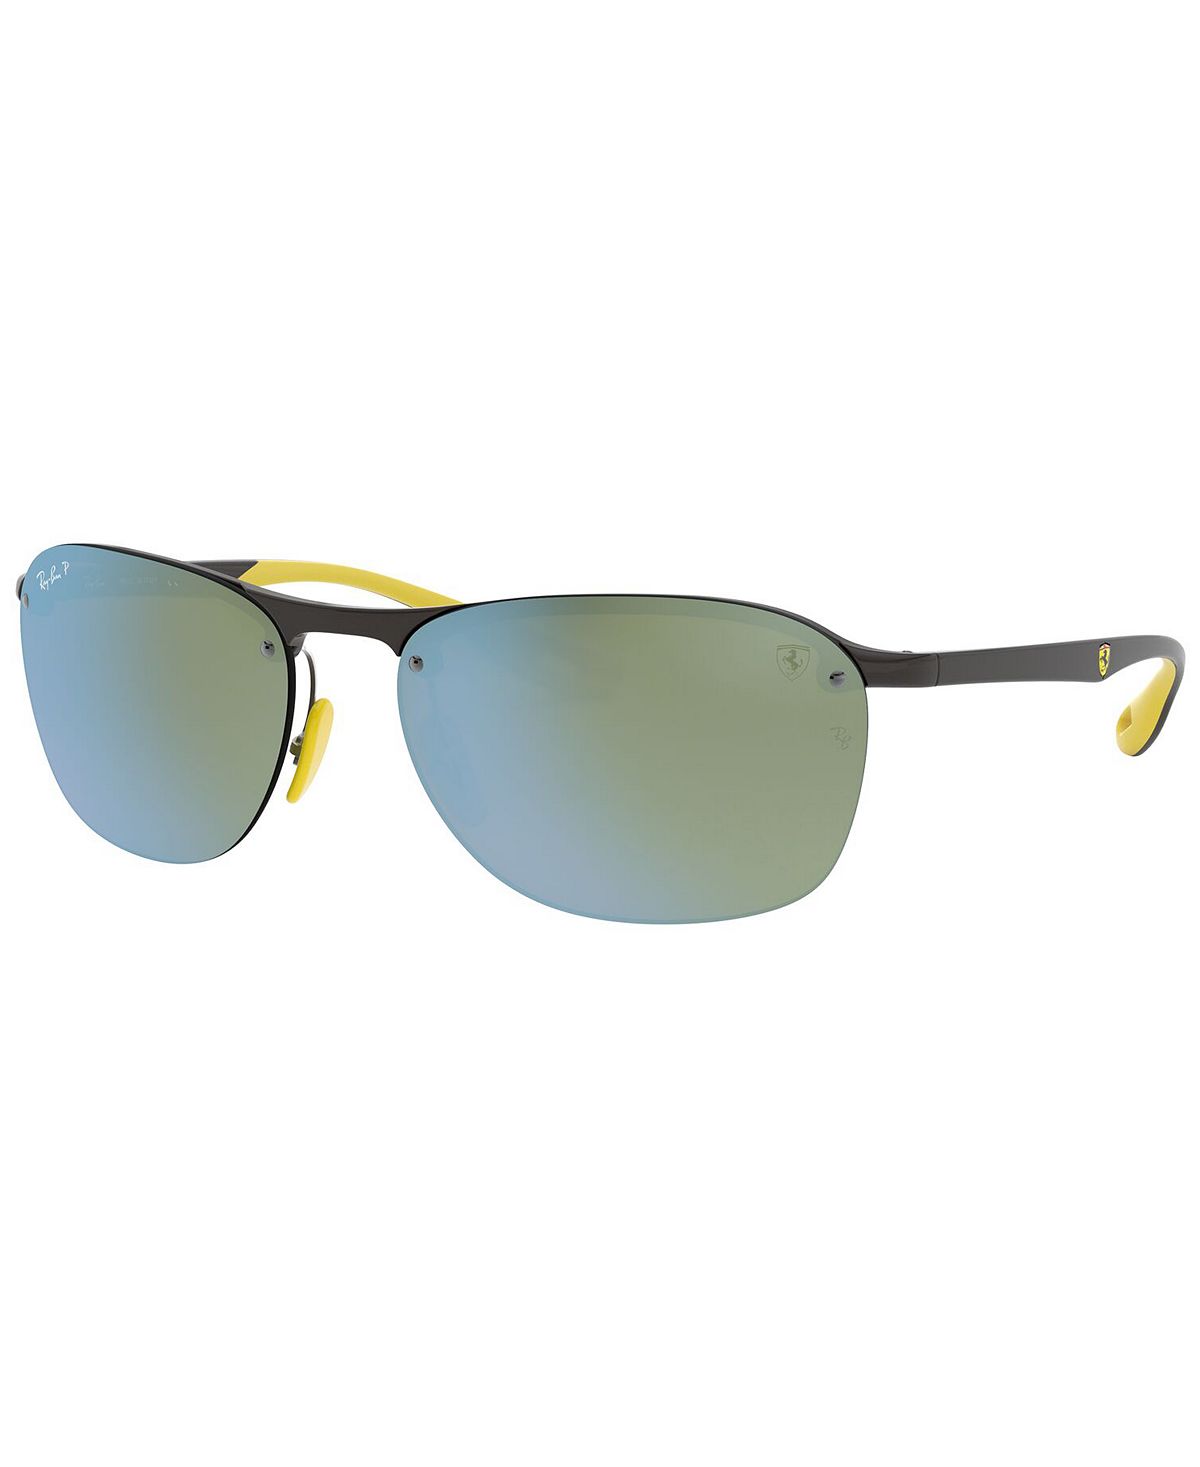 Мужские поляризованные солнцезащитные очки, RB4302M Scuderia Ferrari Collection 62 Ray-Ban